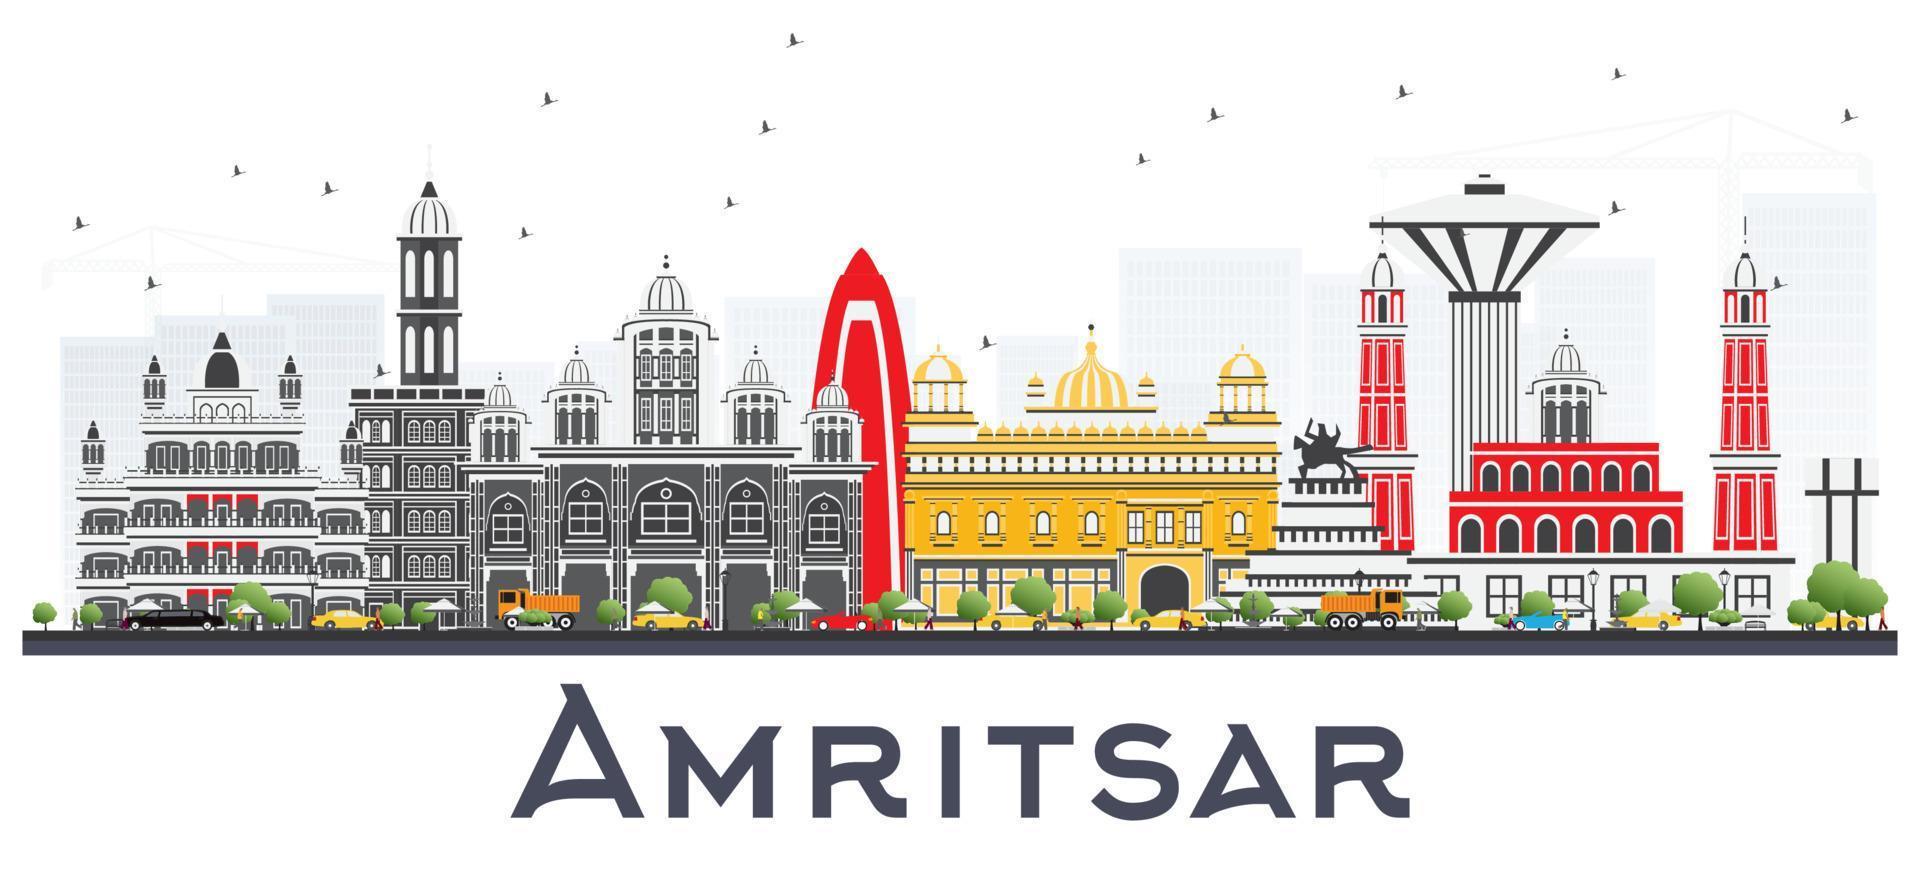 amritsar indien skyline der stadt mit grauen gebäuden isoliert auf weiß. vektor